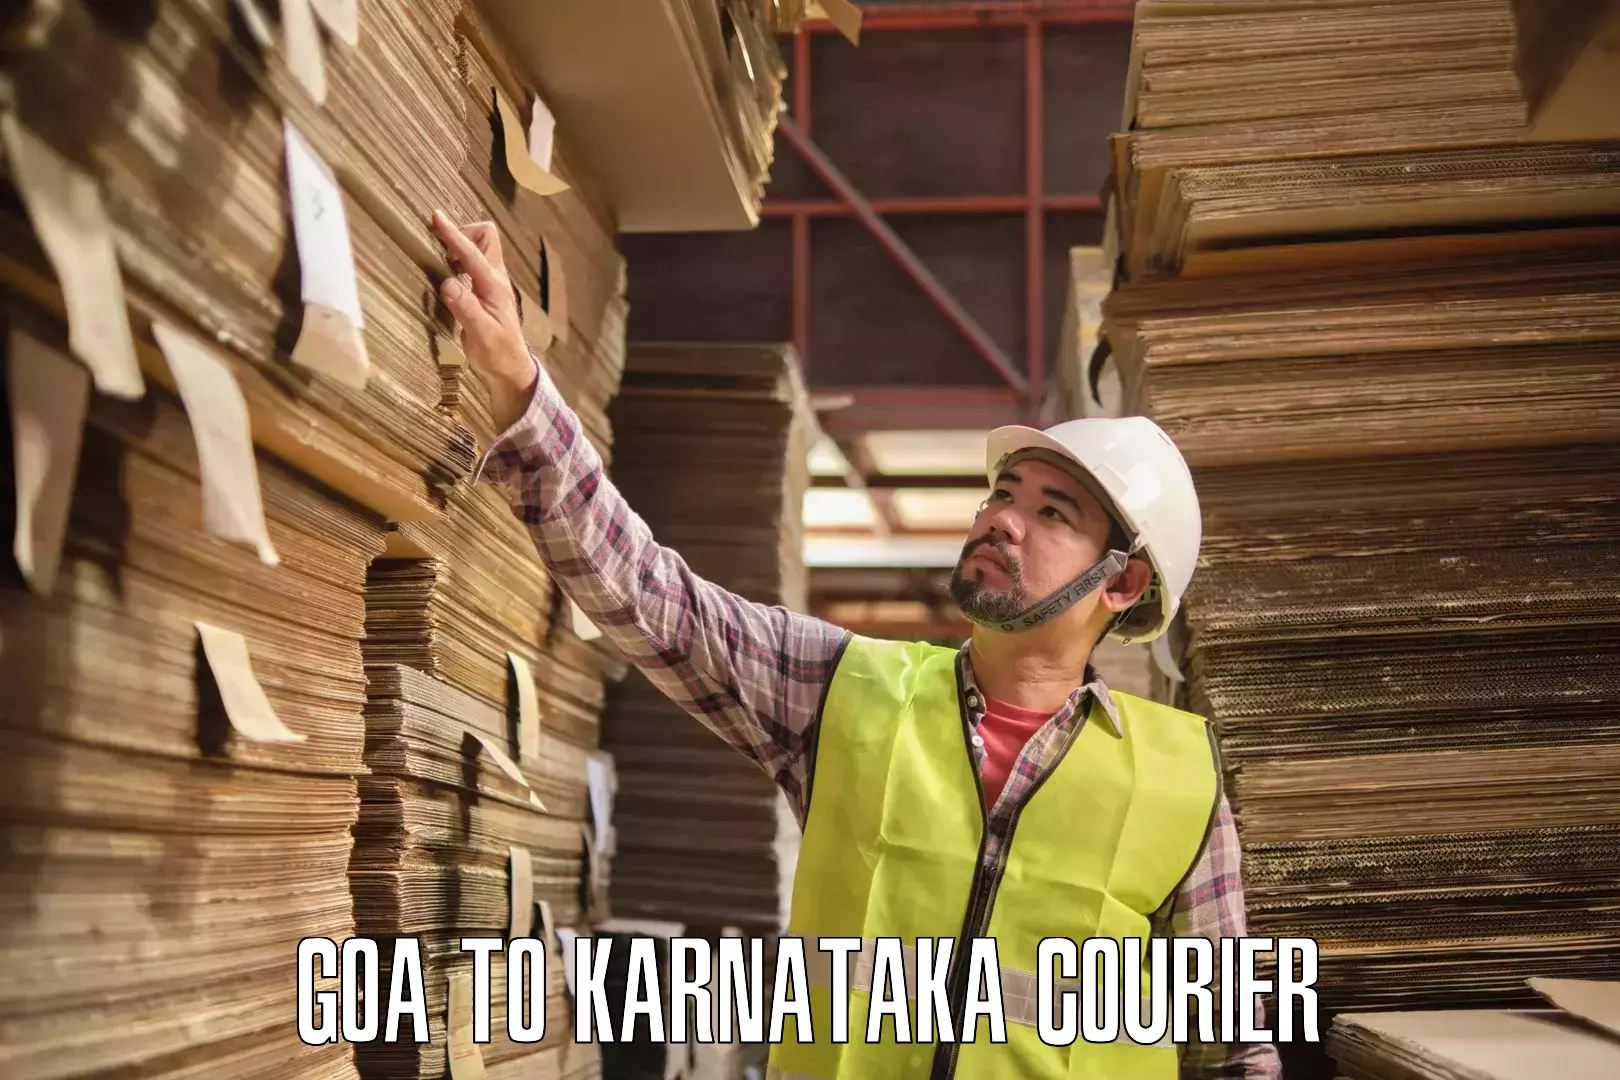 High-capacity parcel service Goa to Kanakapura